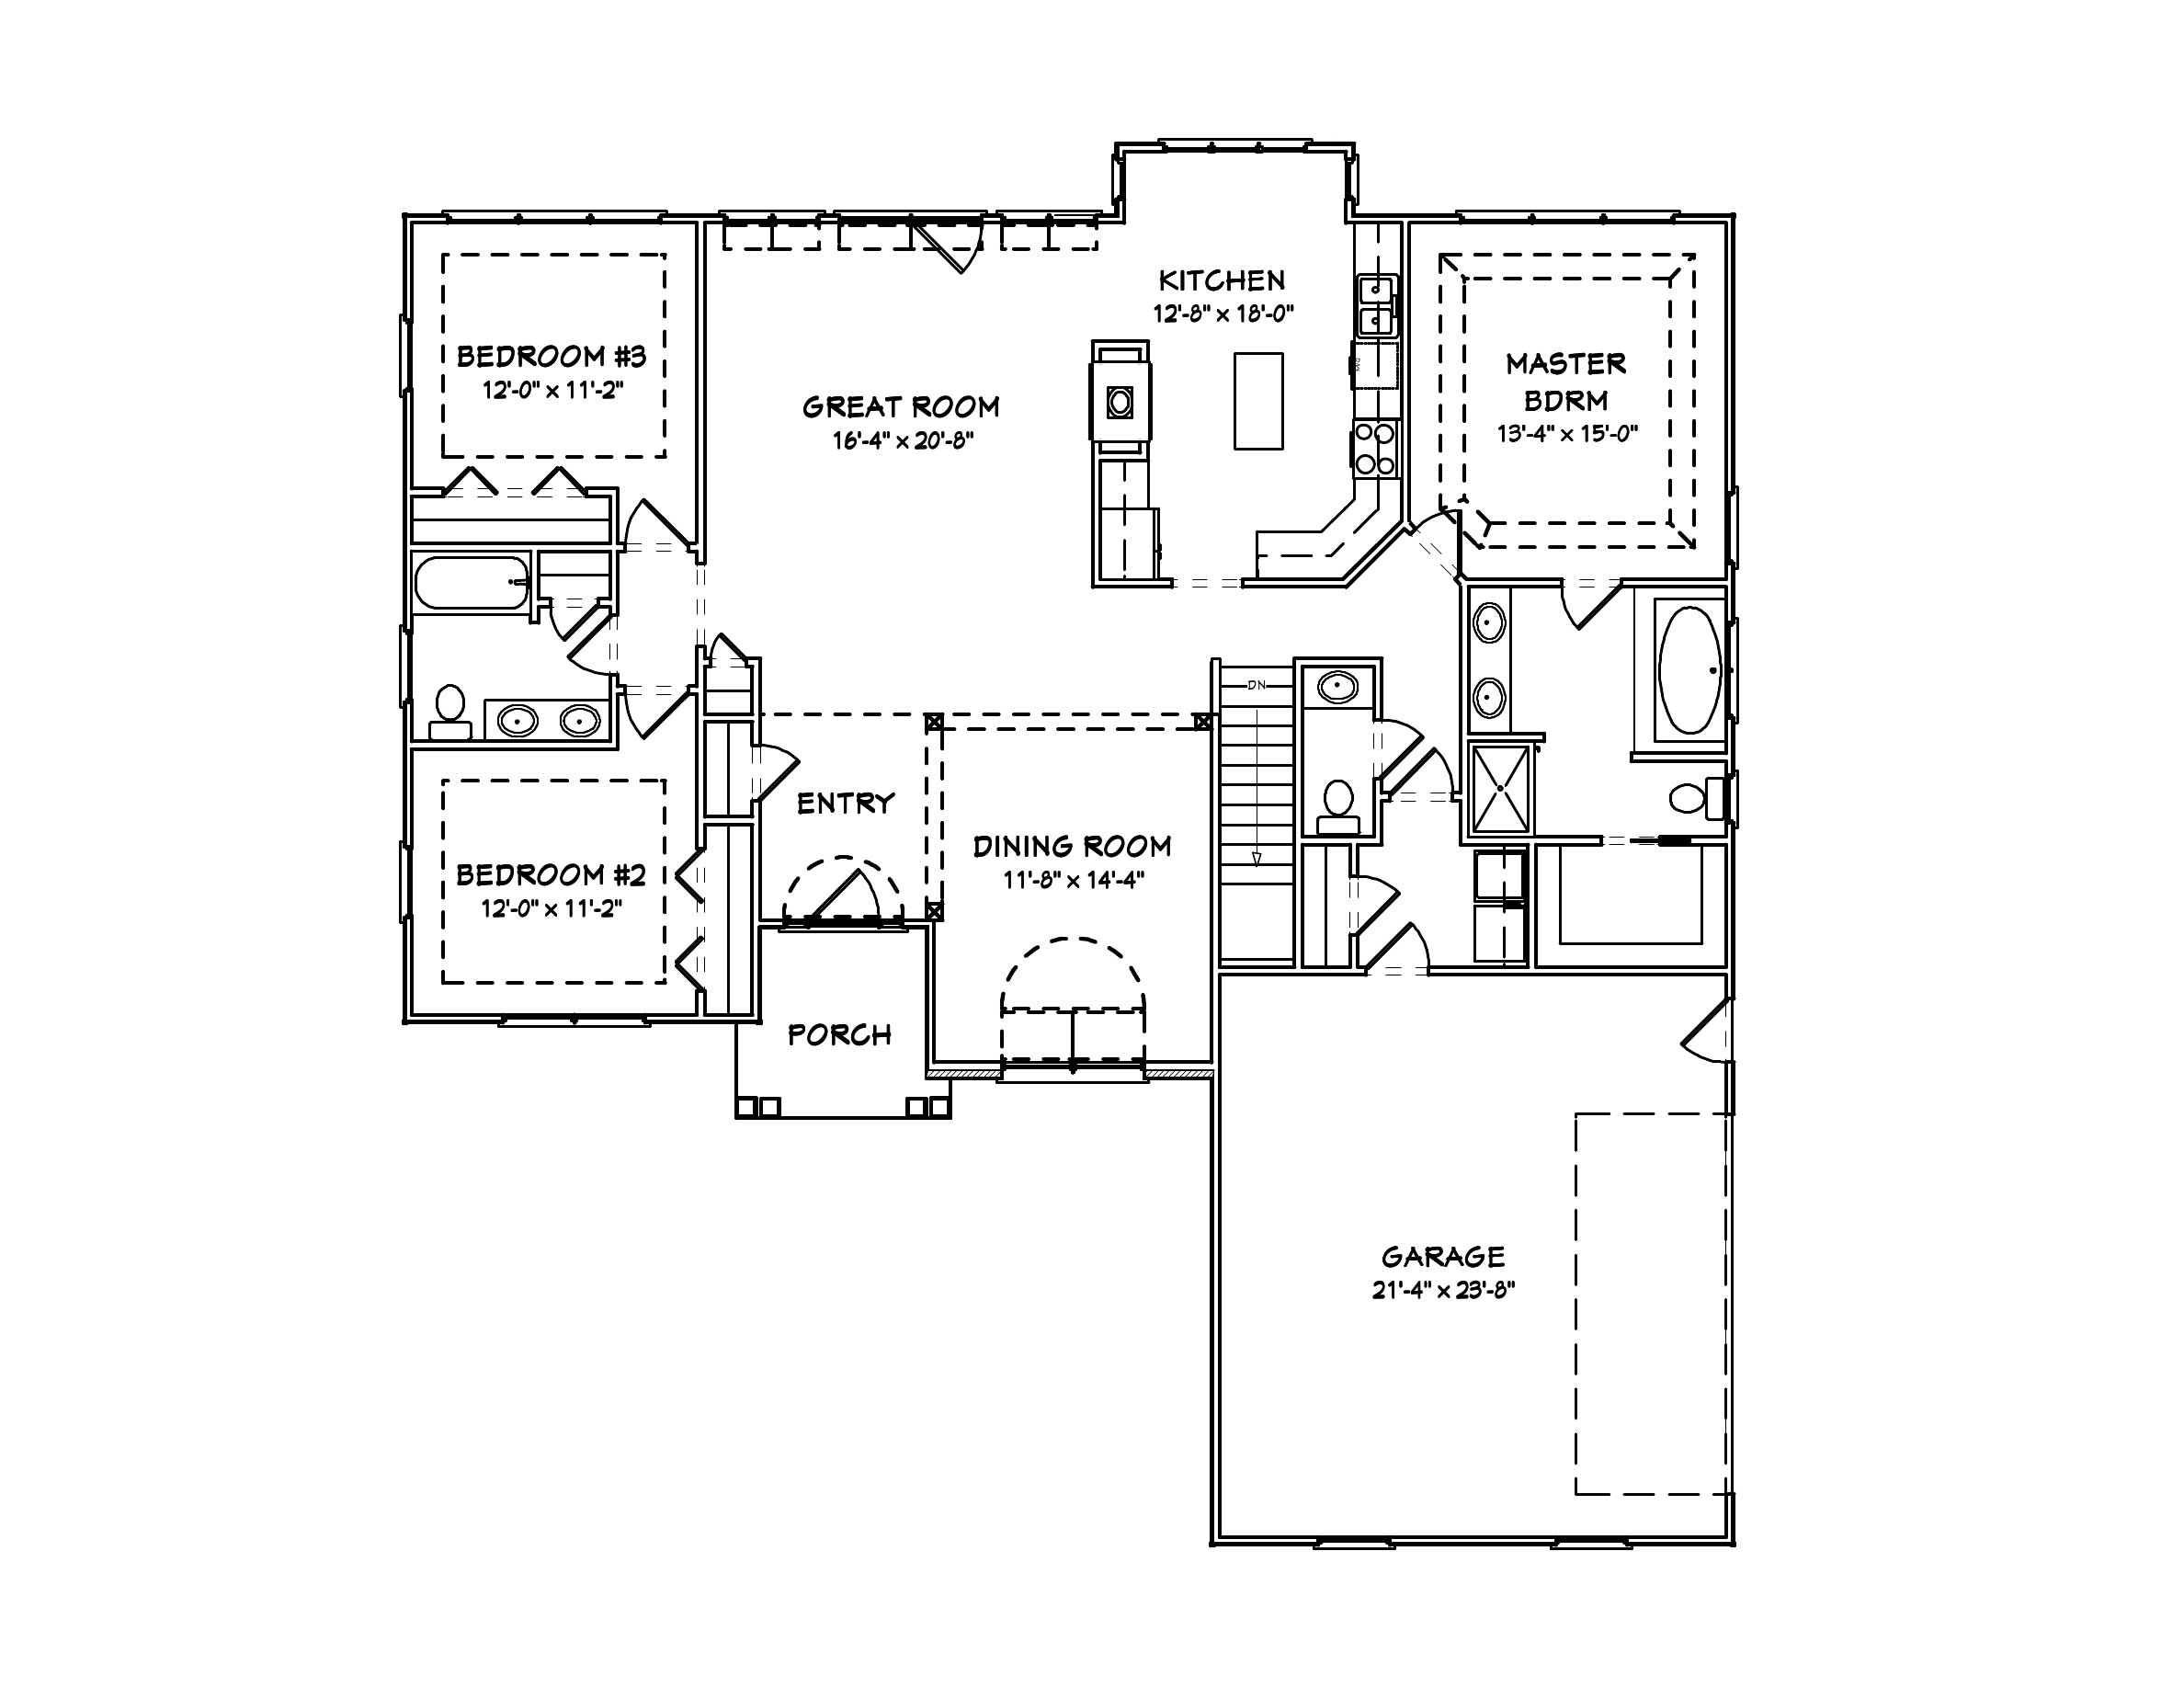 European Houseplans - Home Design mas1037